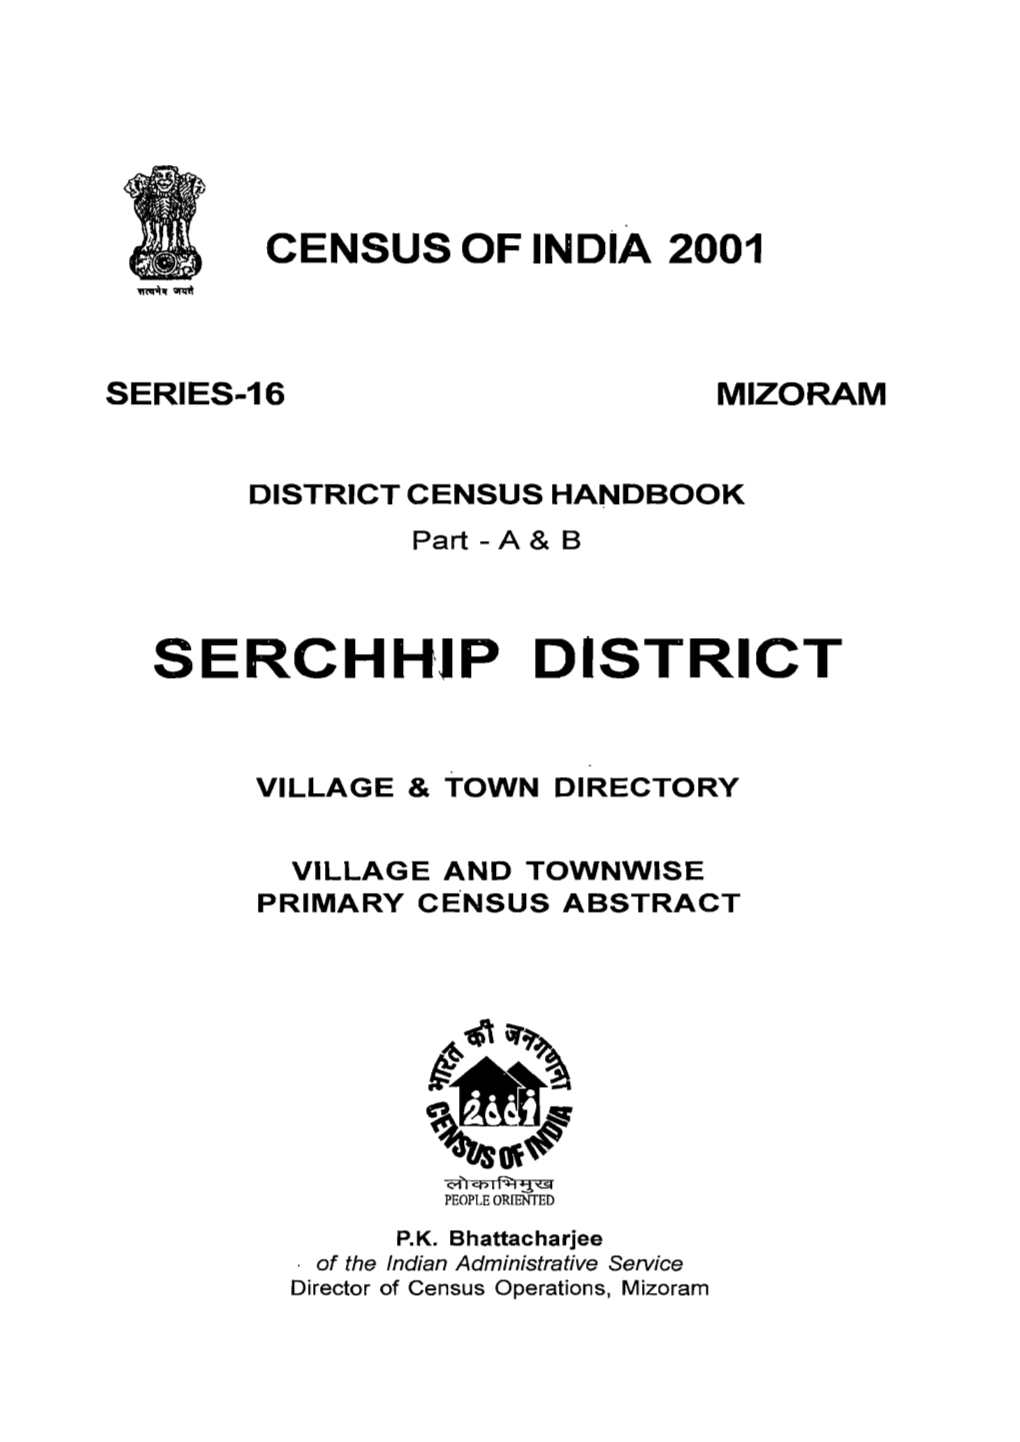 District Census Handbook, Serchhip, Part a & B, Series-16, Mizoram